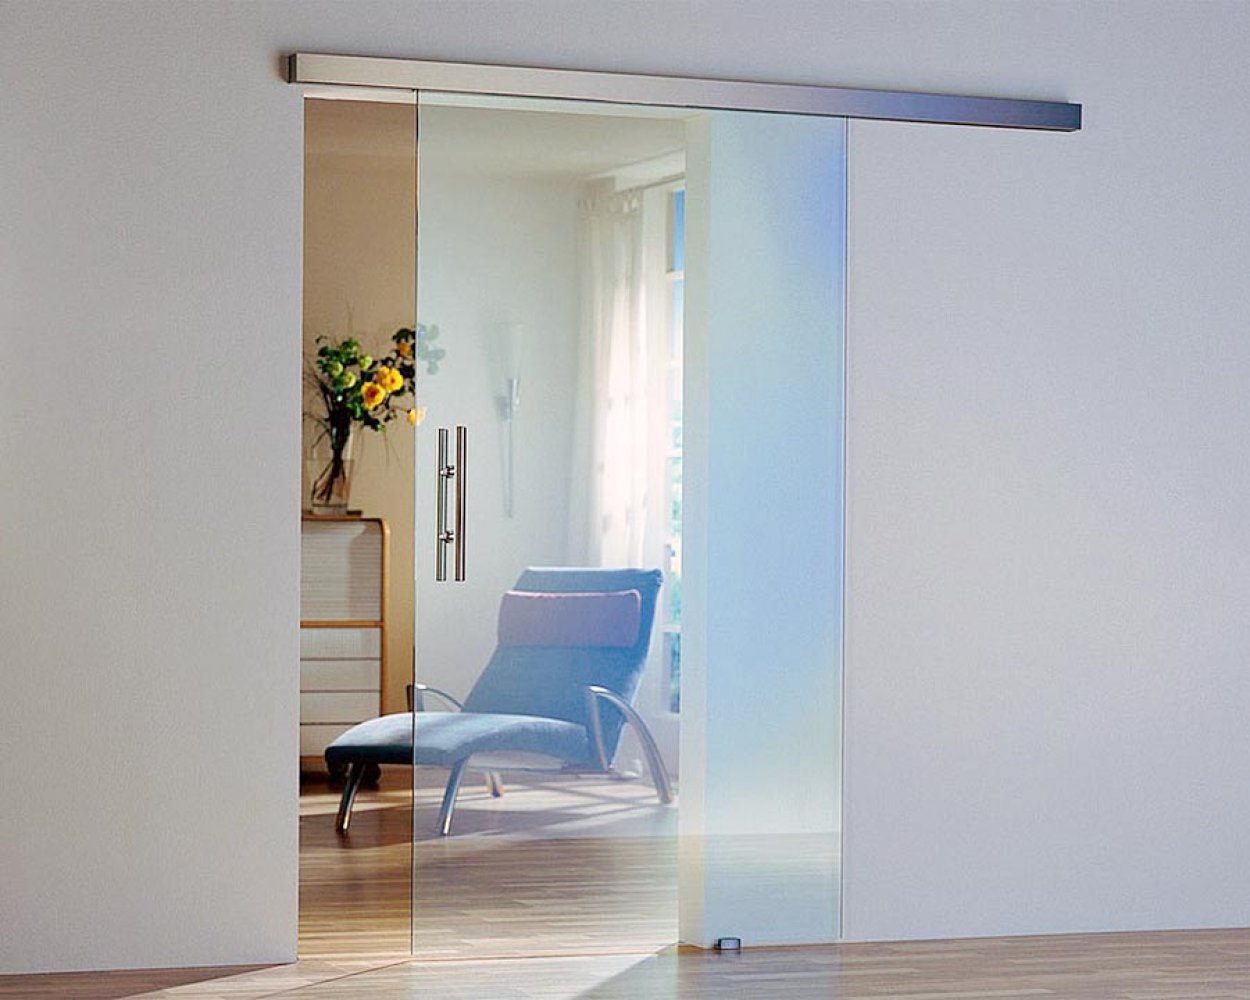 Дверь из закаленного стекла. Dorma Agile 150. W-001/Air Glass. Раздвижная система цельностеклянная. Раздвижные перегородки estet.